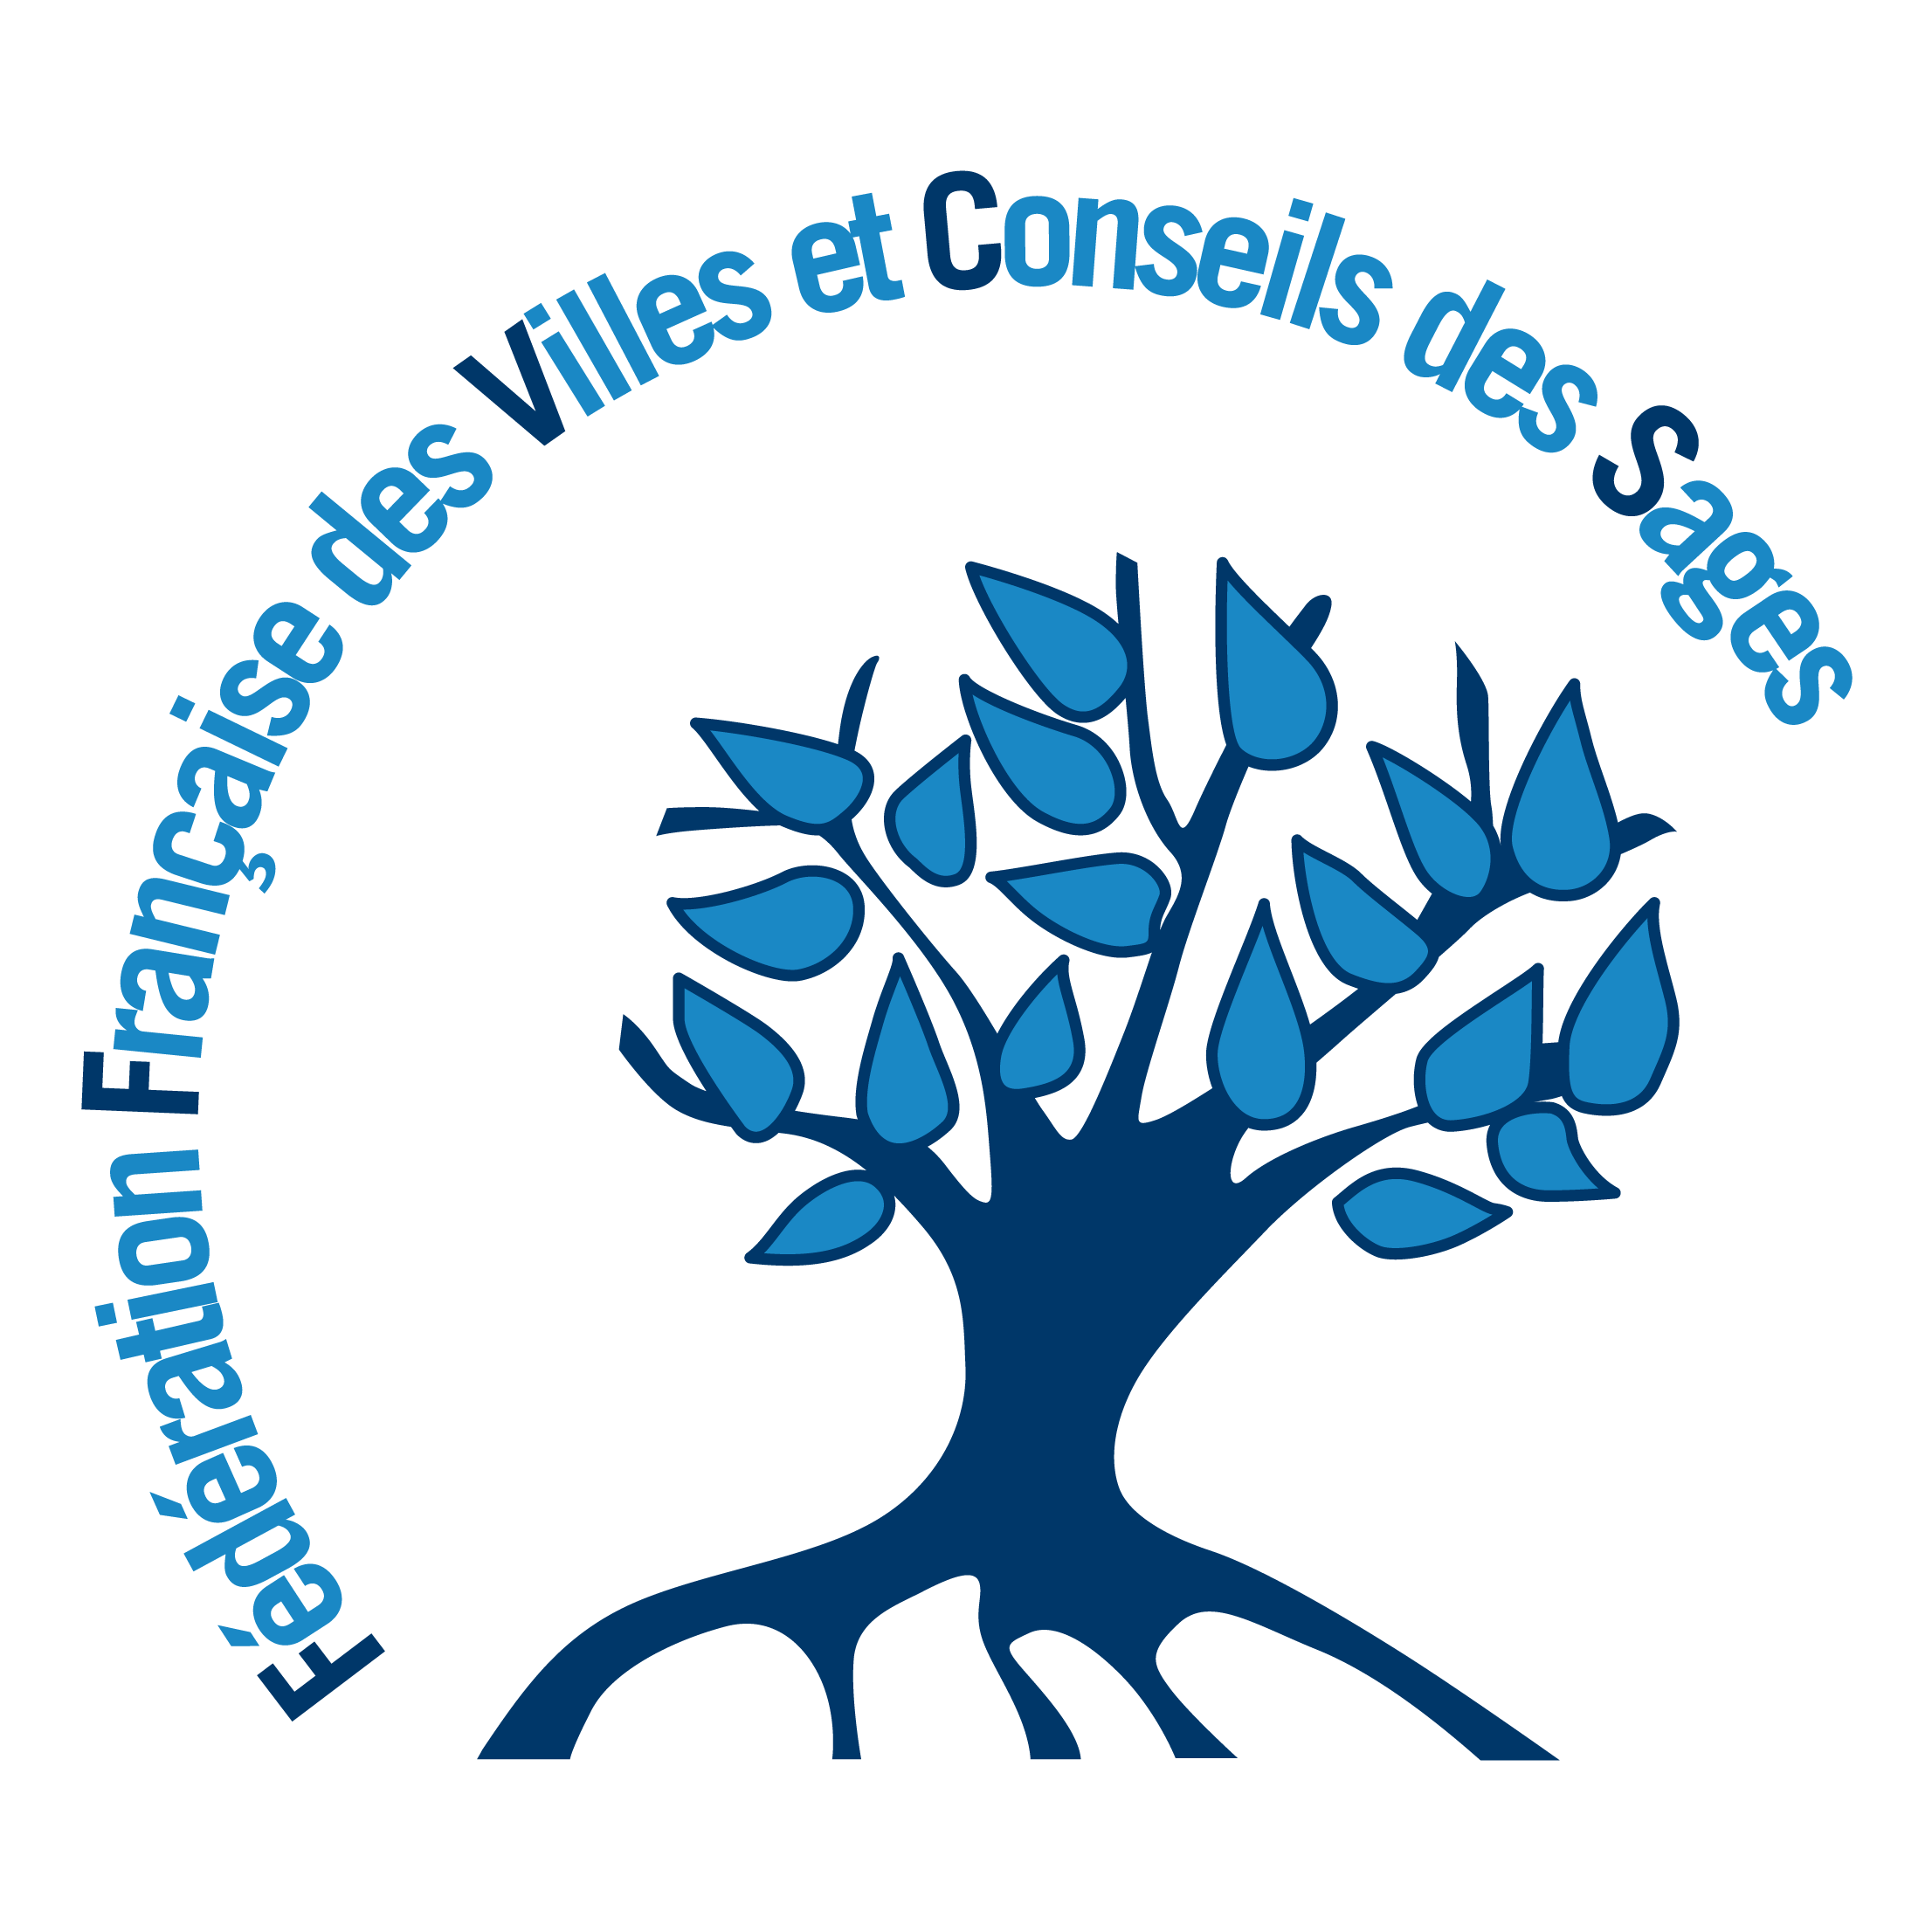 Logo Fédération Française des Villes et Conseils des Sages - Arbre bleu foncé et feuilles bleu claire